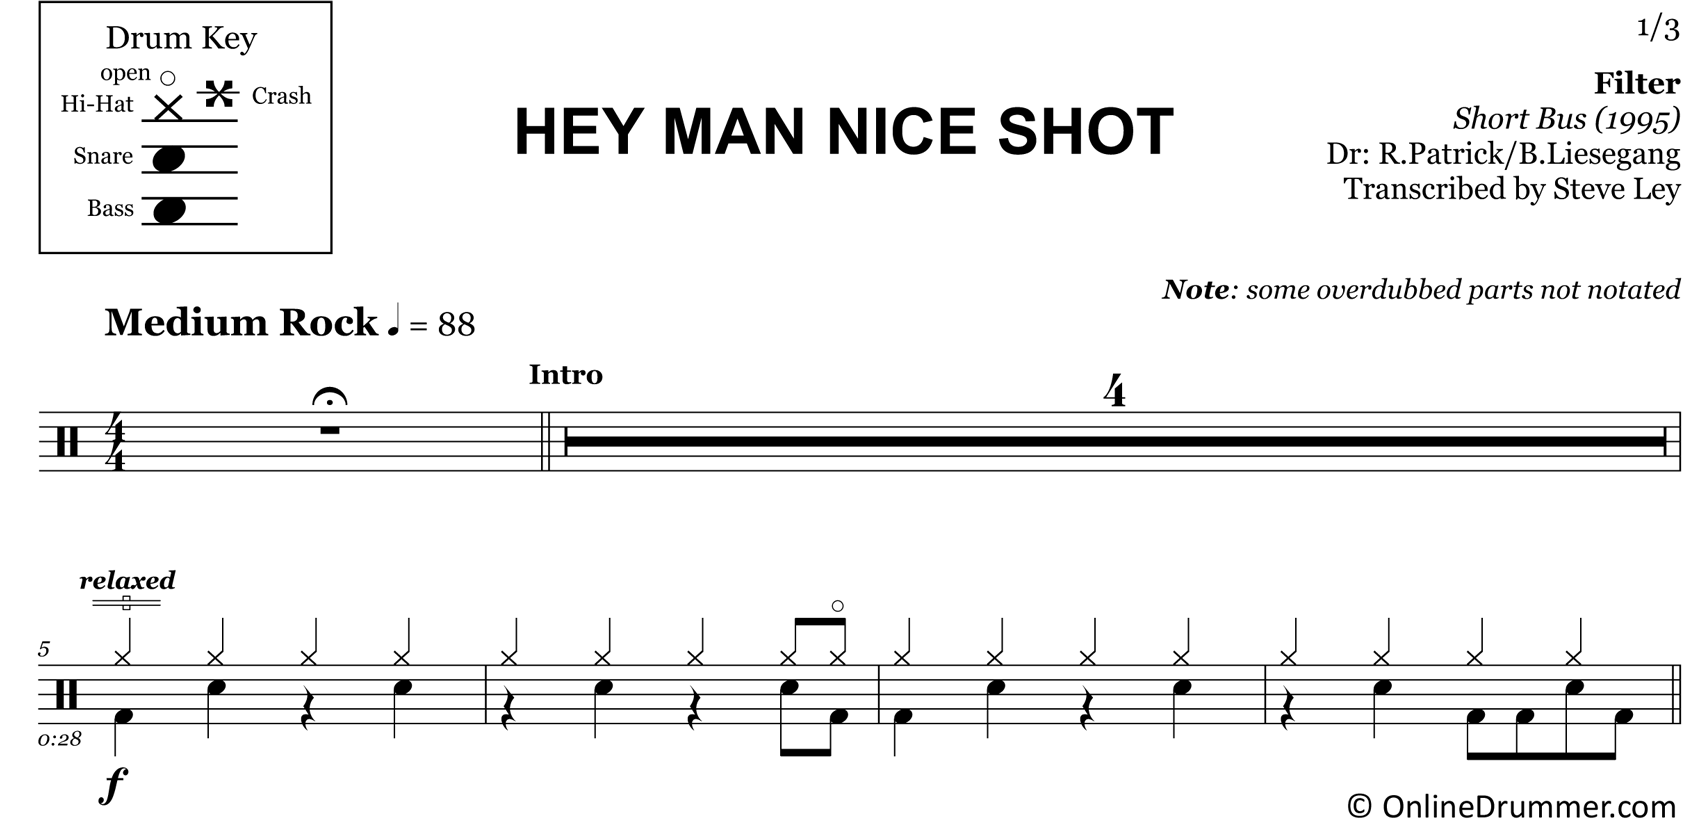 Hey Man Nice Shot - Filter - Drum Sheet Music